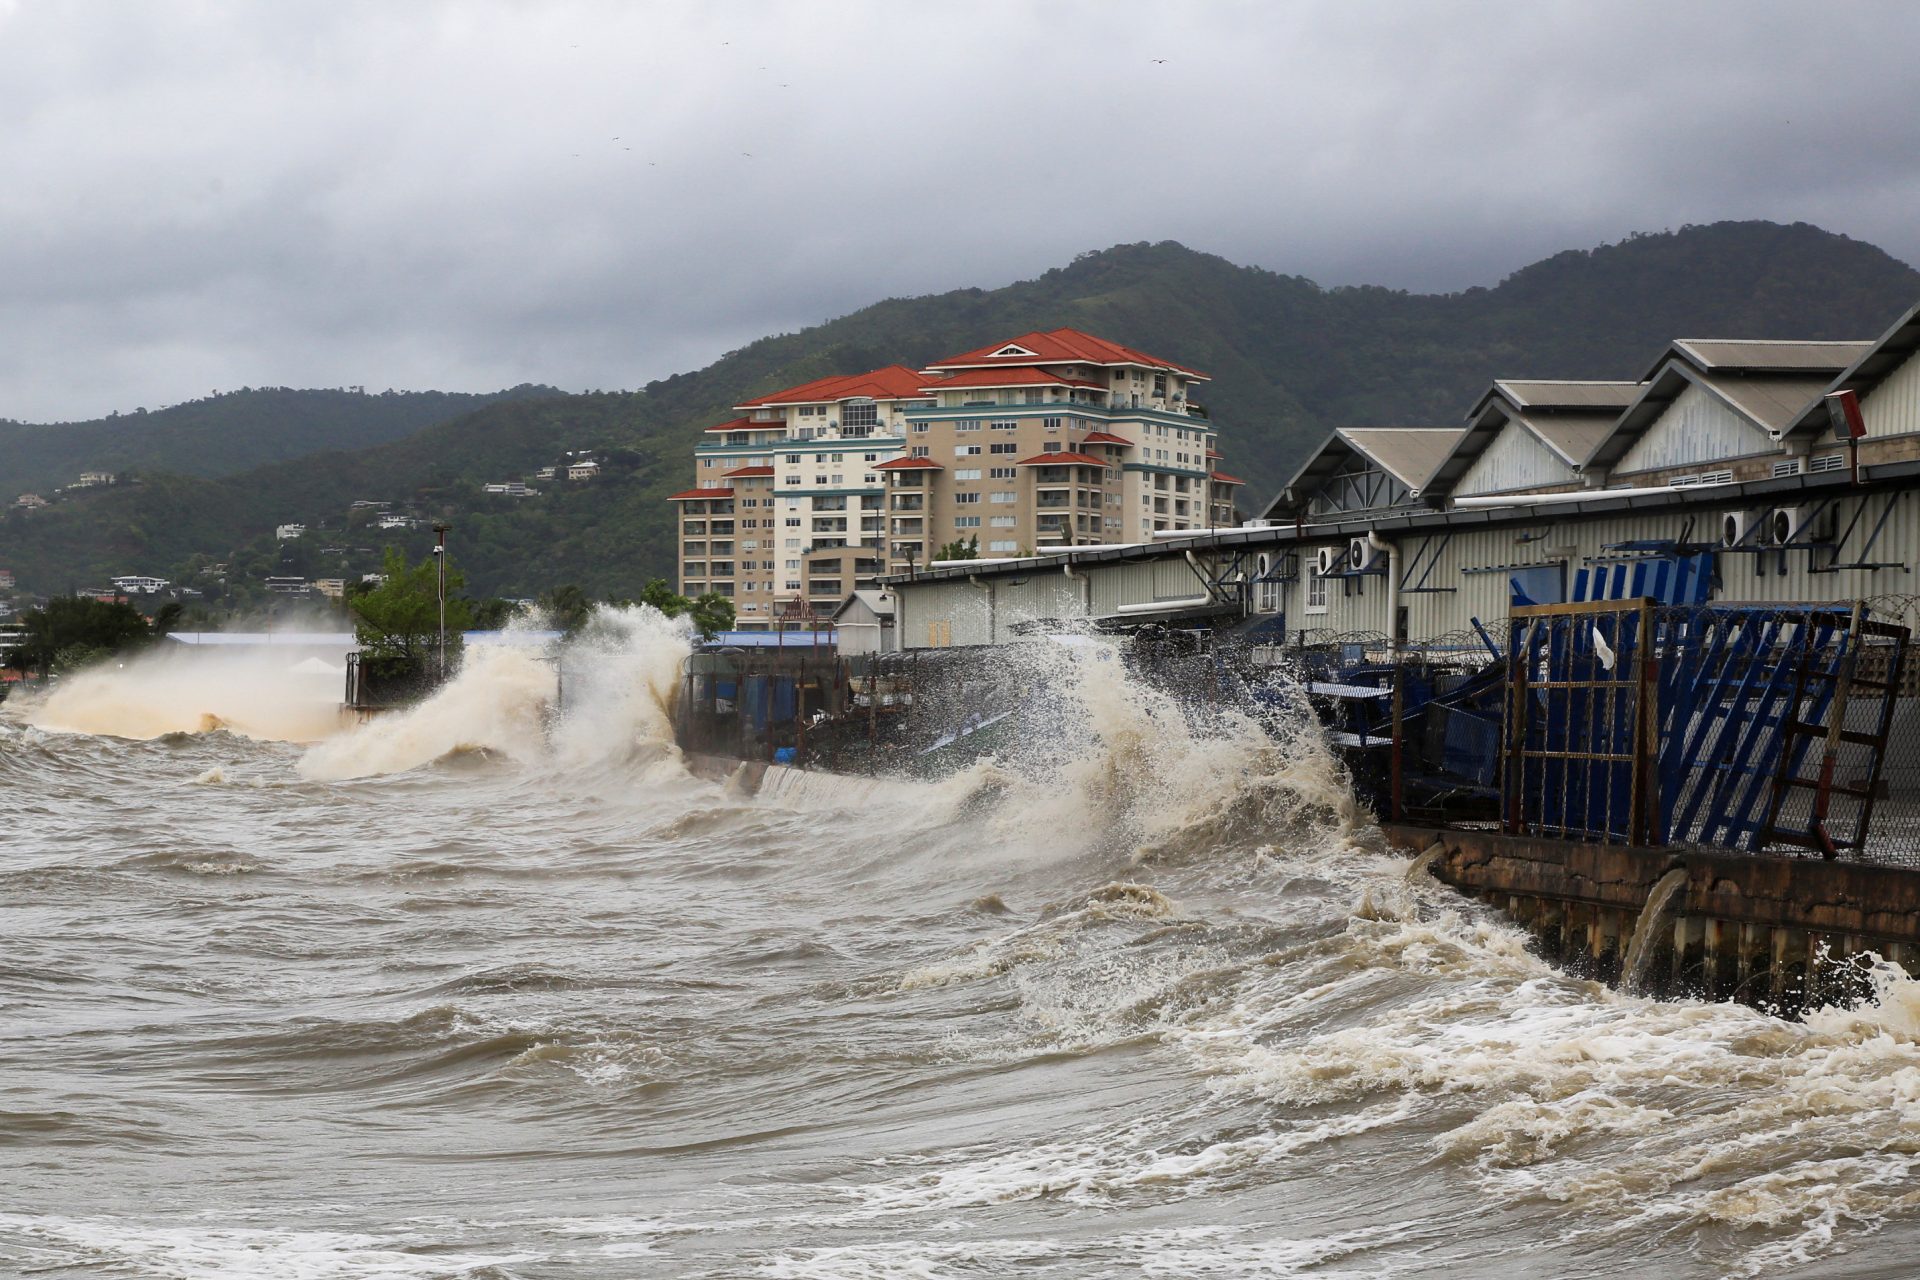 Alerte d'un ouragan "catastrophique" imminente pour la Jamaïque